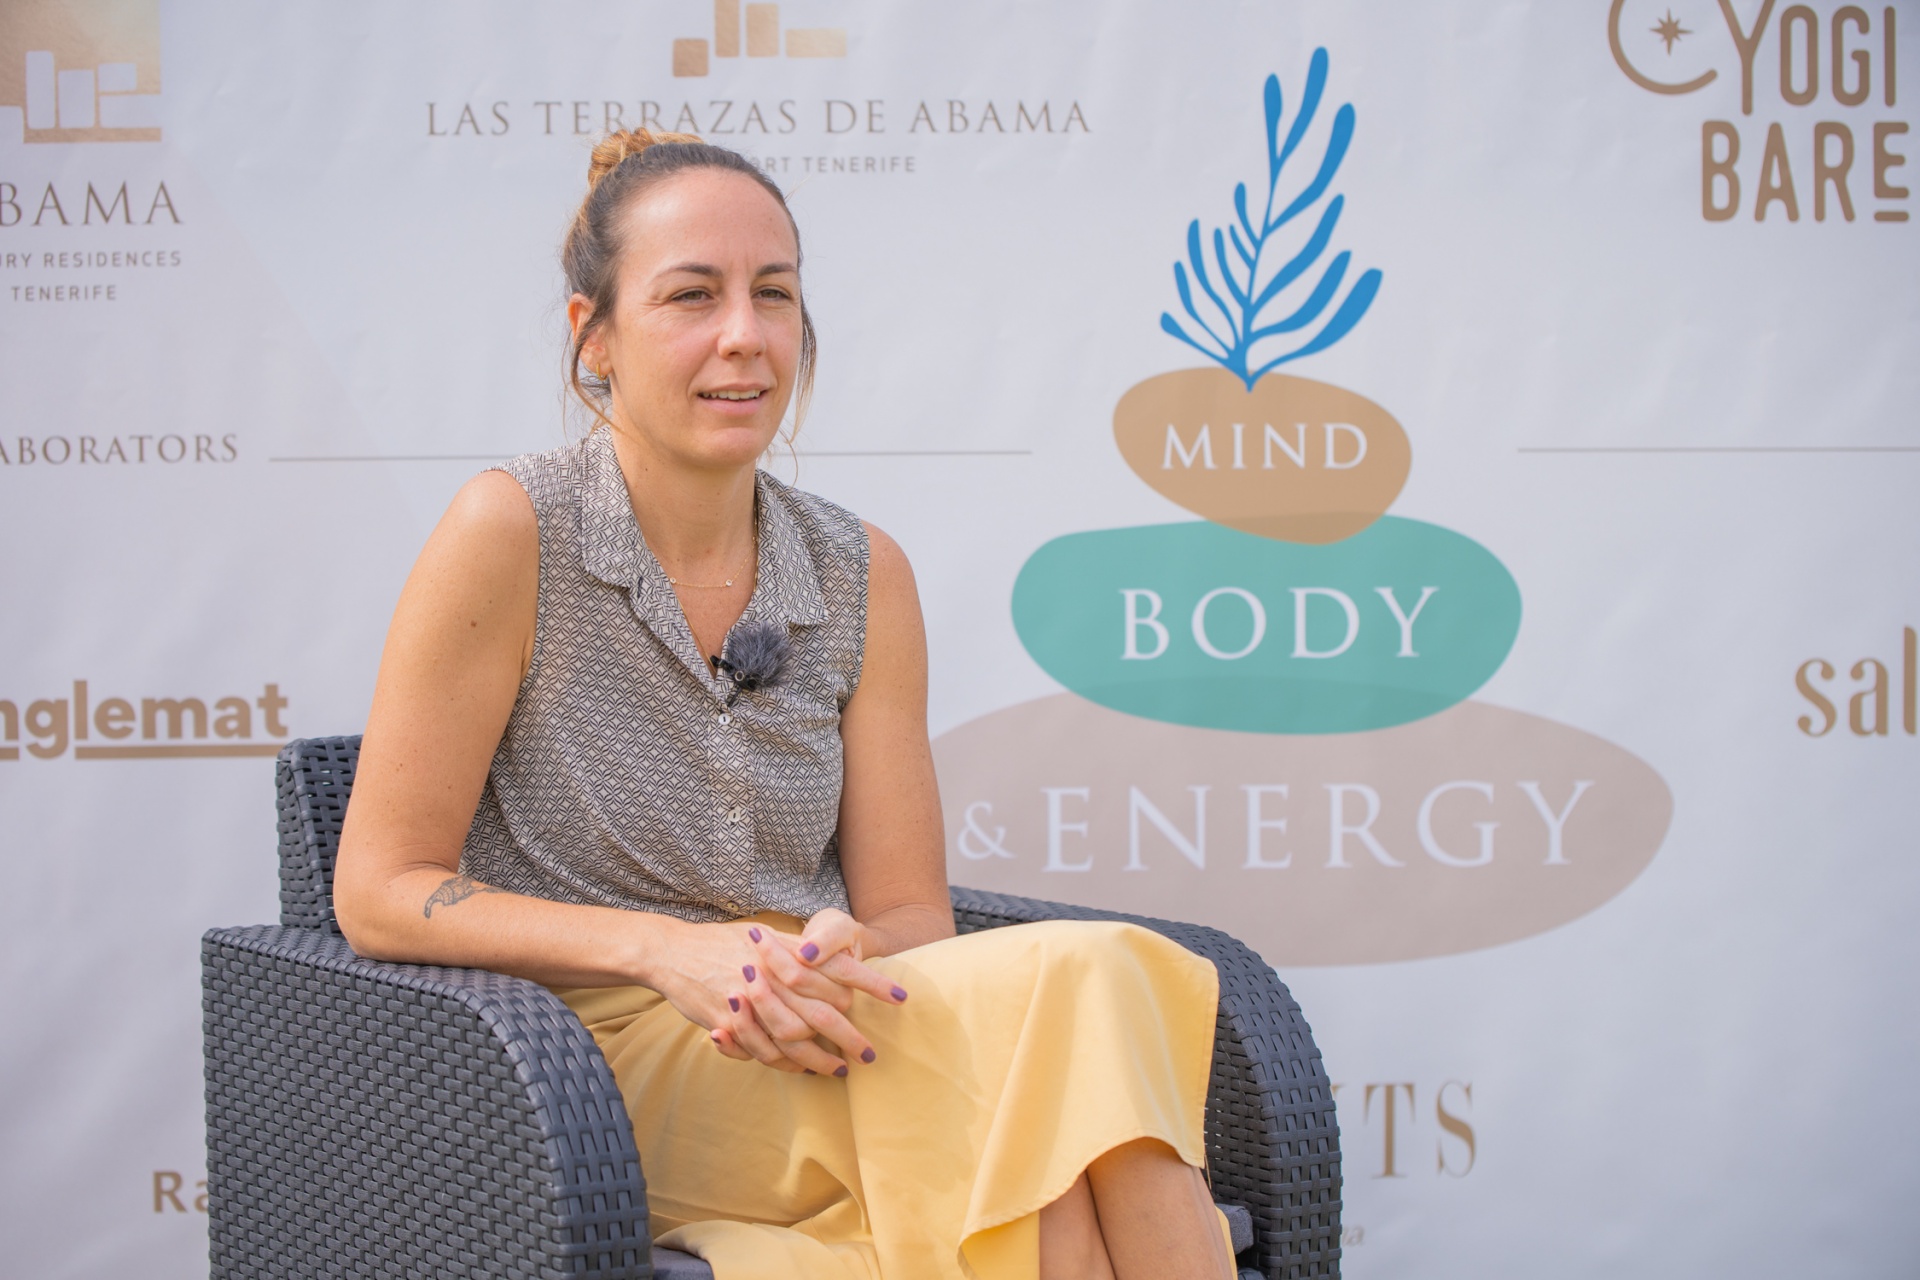 Devi Pereyra: “El Mindfulness debería generalizarse en el campo de la salud mental como herramienta preventiva y terapéutica”